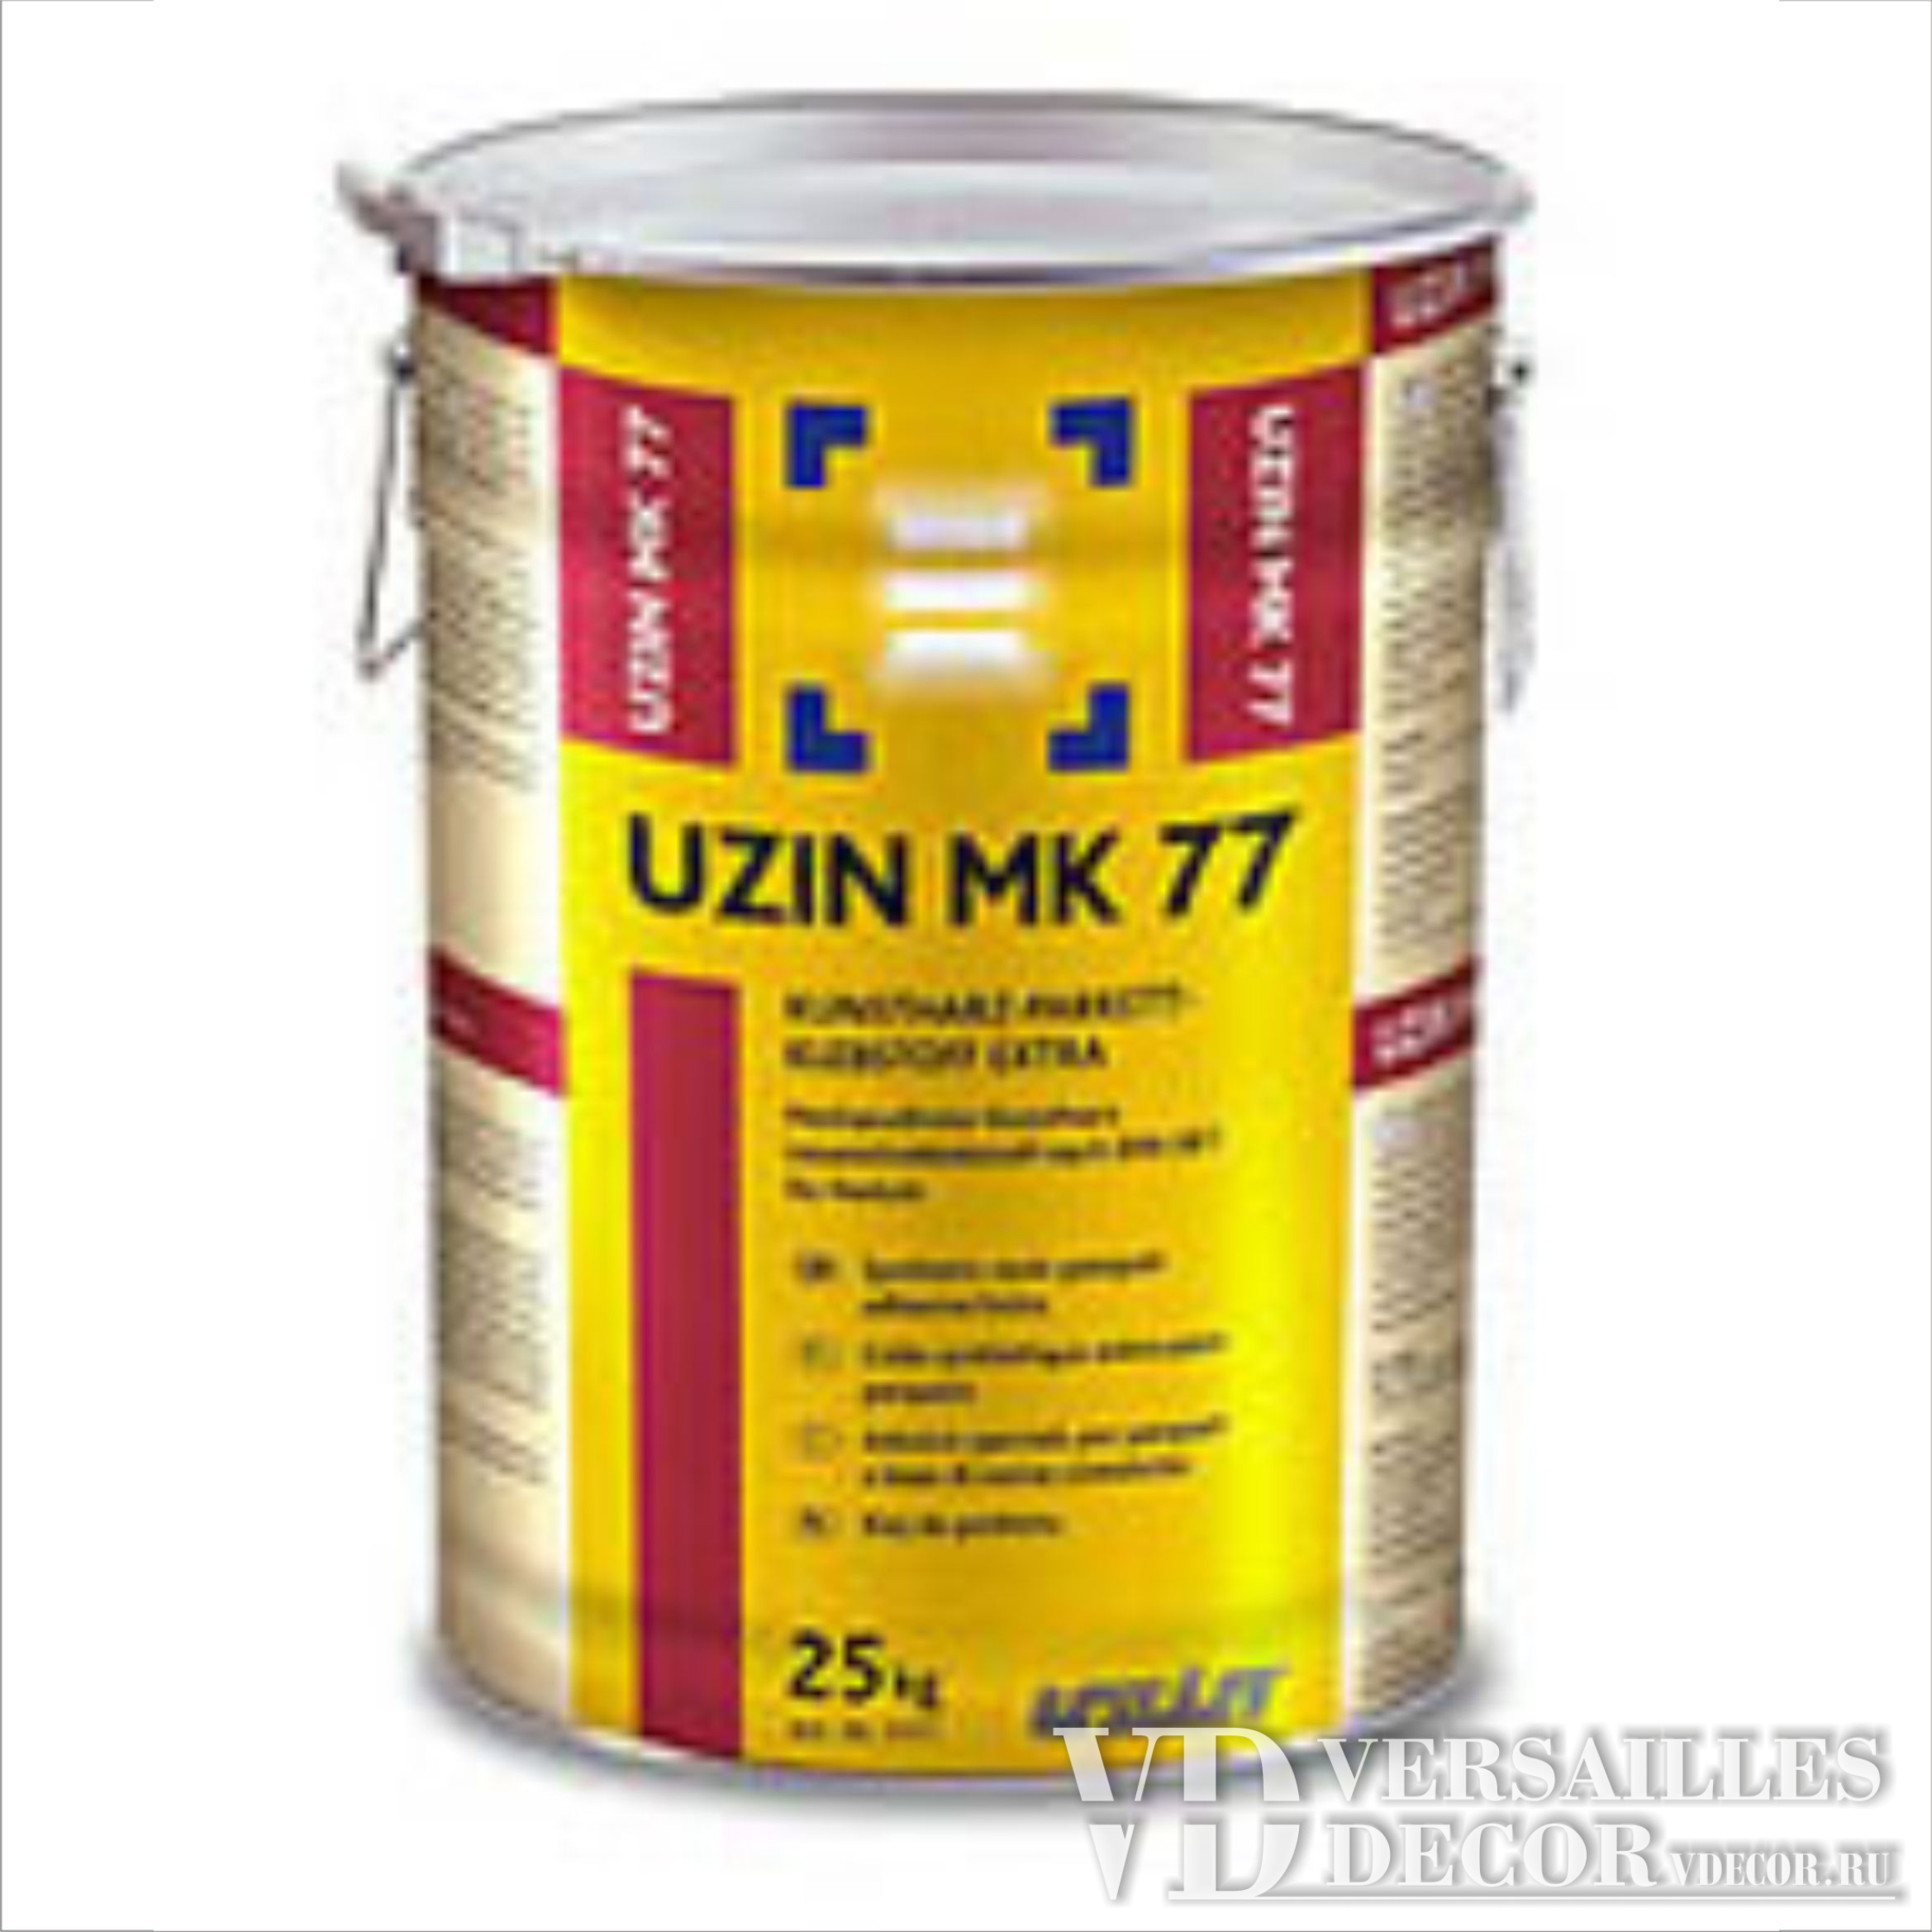 MK 77